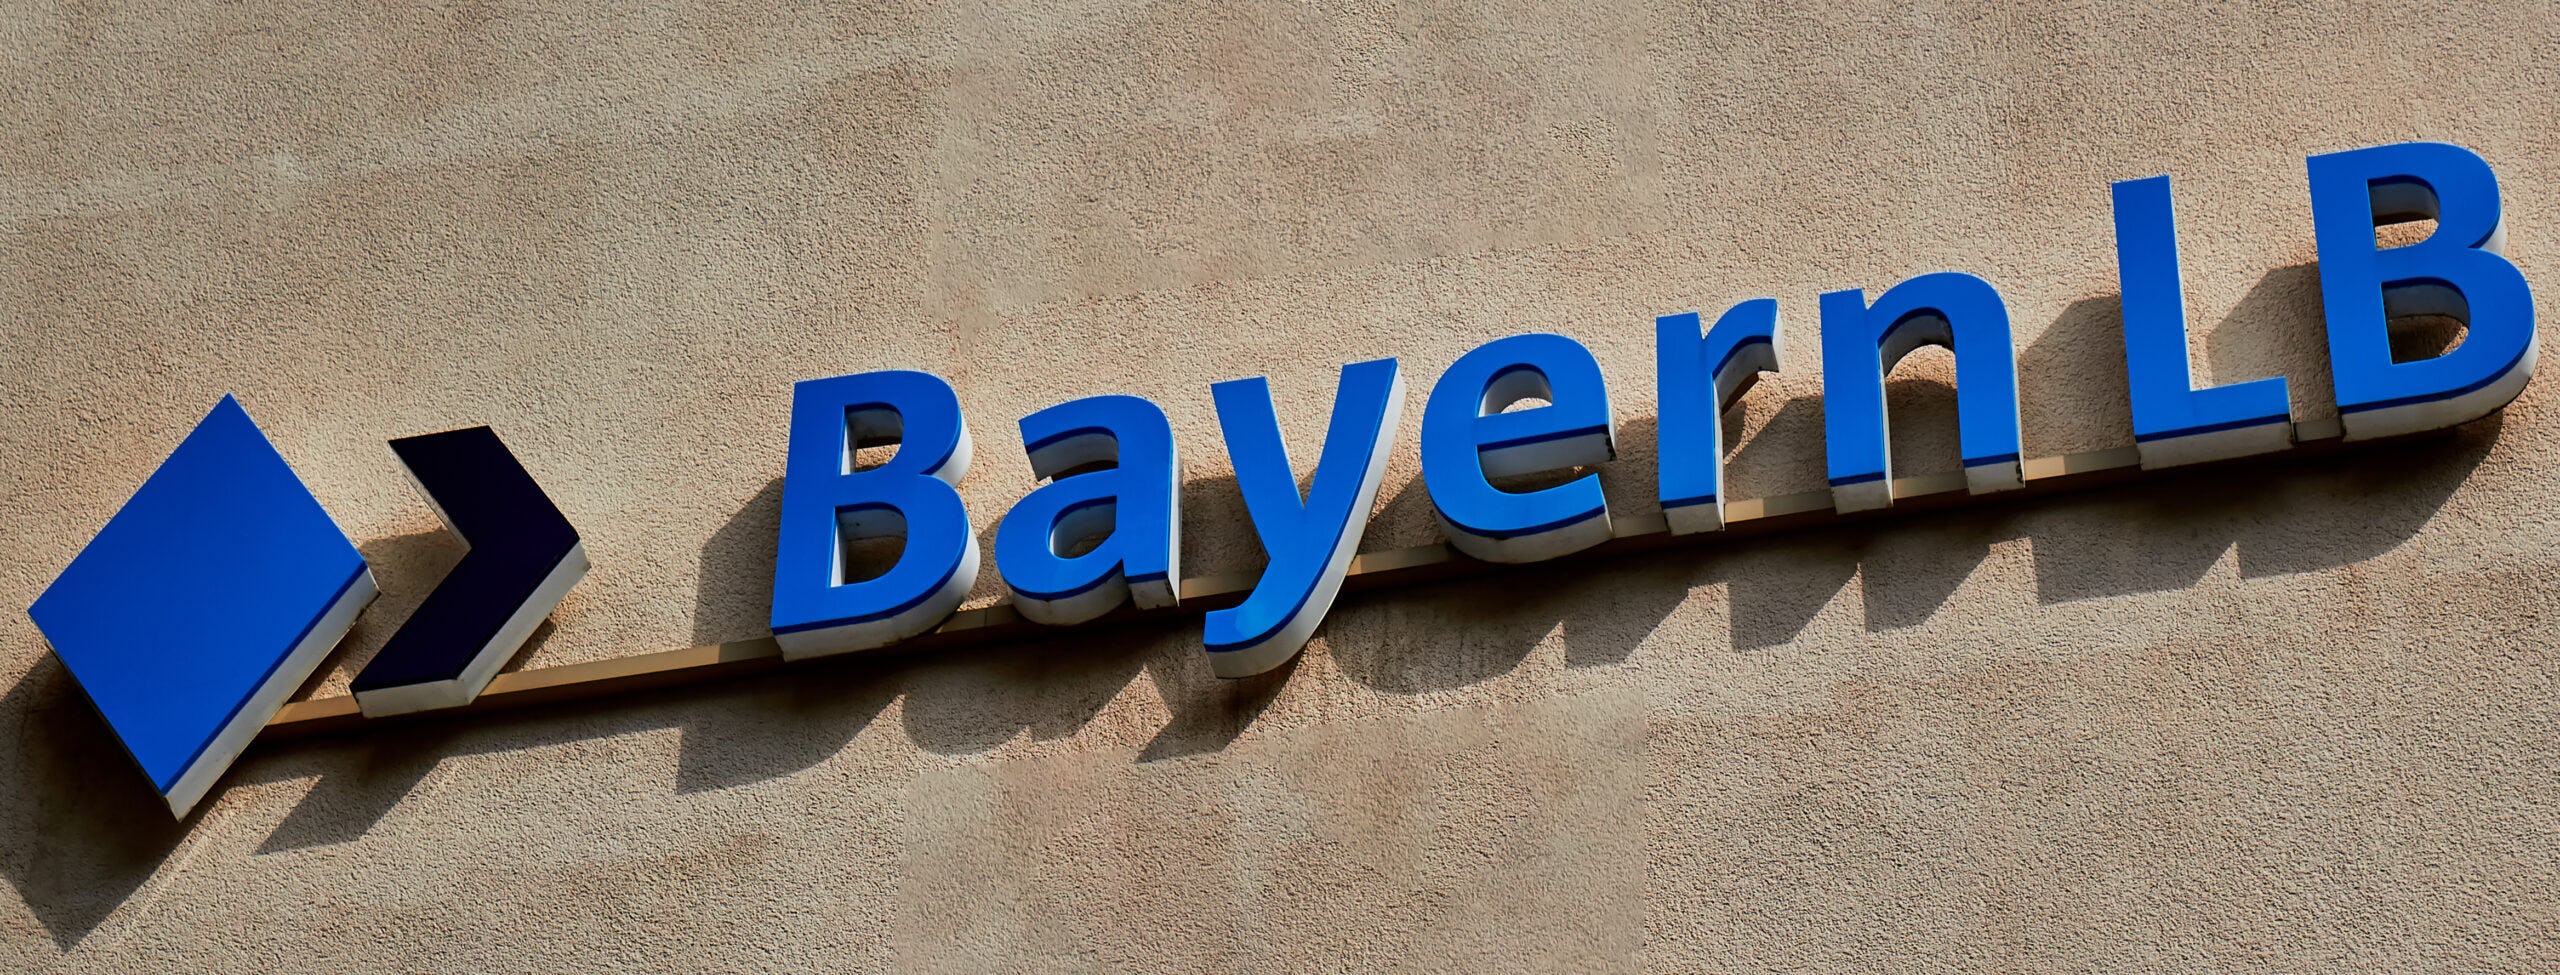 Duitse vastgoedfinancier BayernLB opent eigen kantoor in Amsterdam